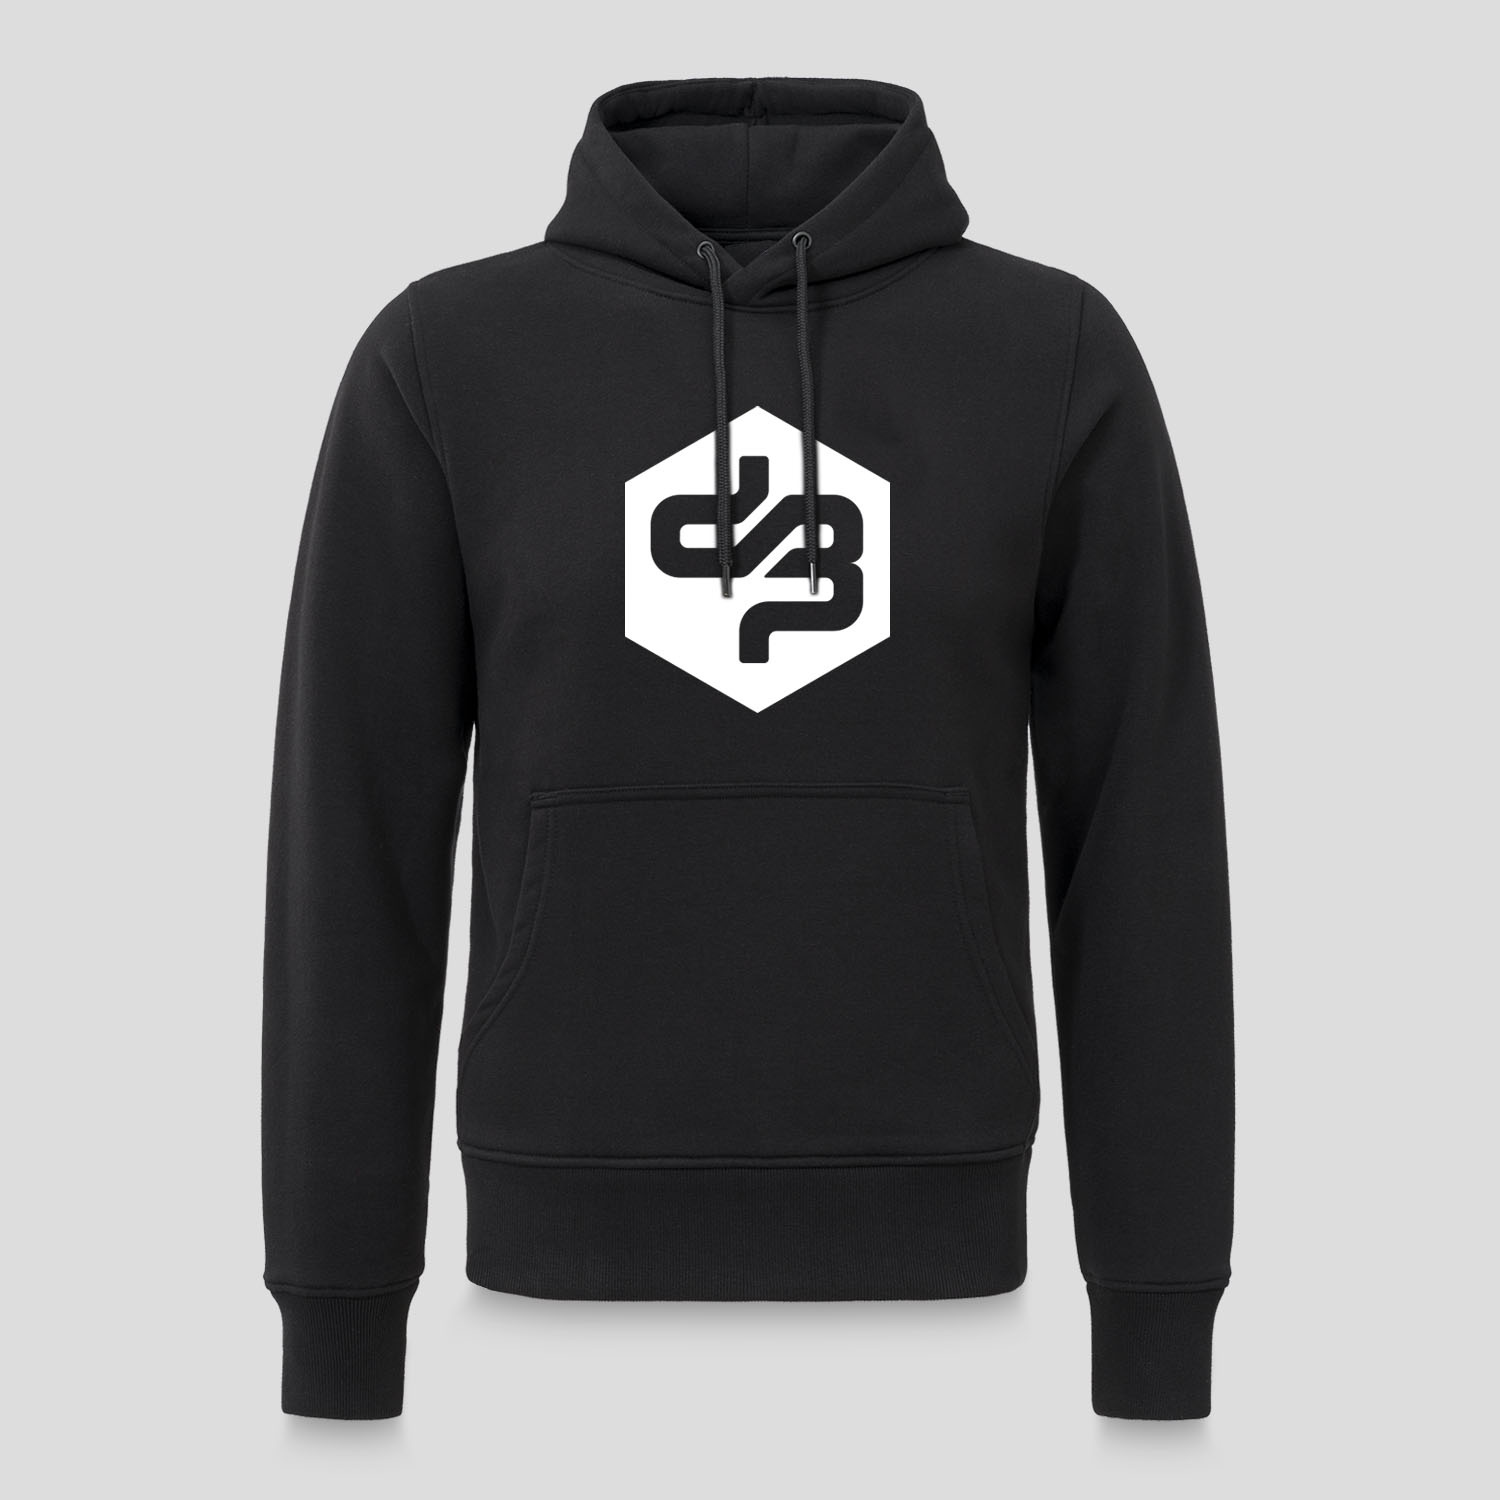 Decibel hoodie black/white